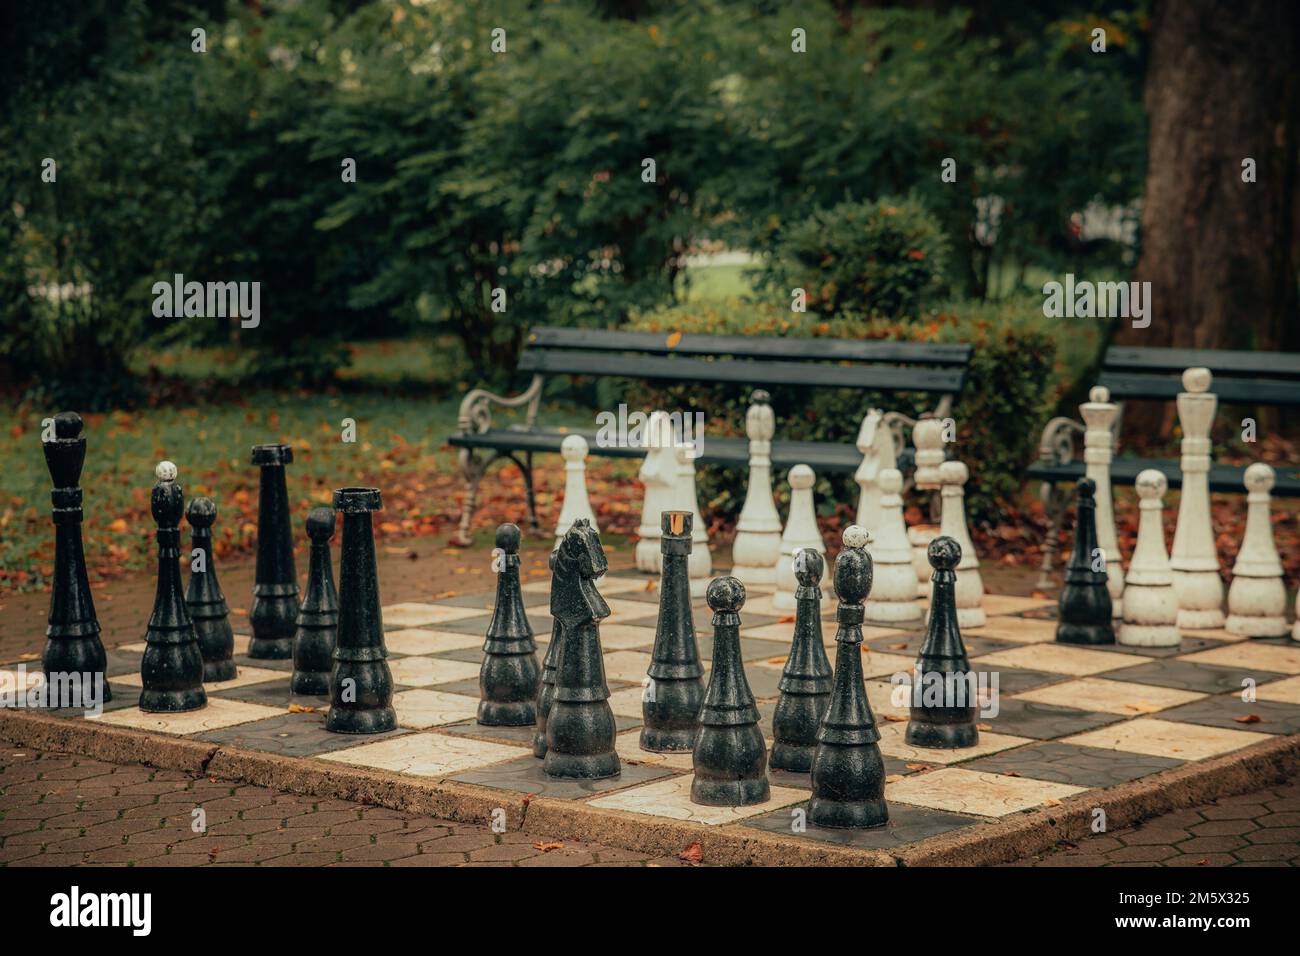 Jeu d'échecs à l'extérieur dans un parc. Figures de jeu noir et blanc debout au hasard sur le damier. Banque D'Images